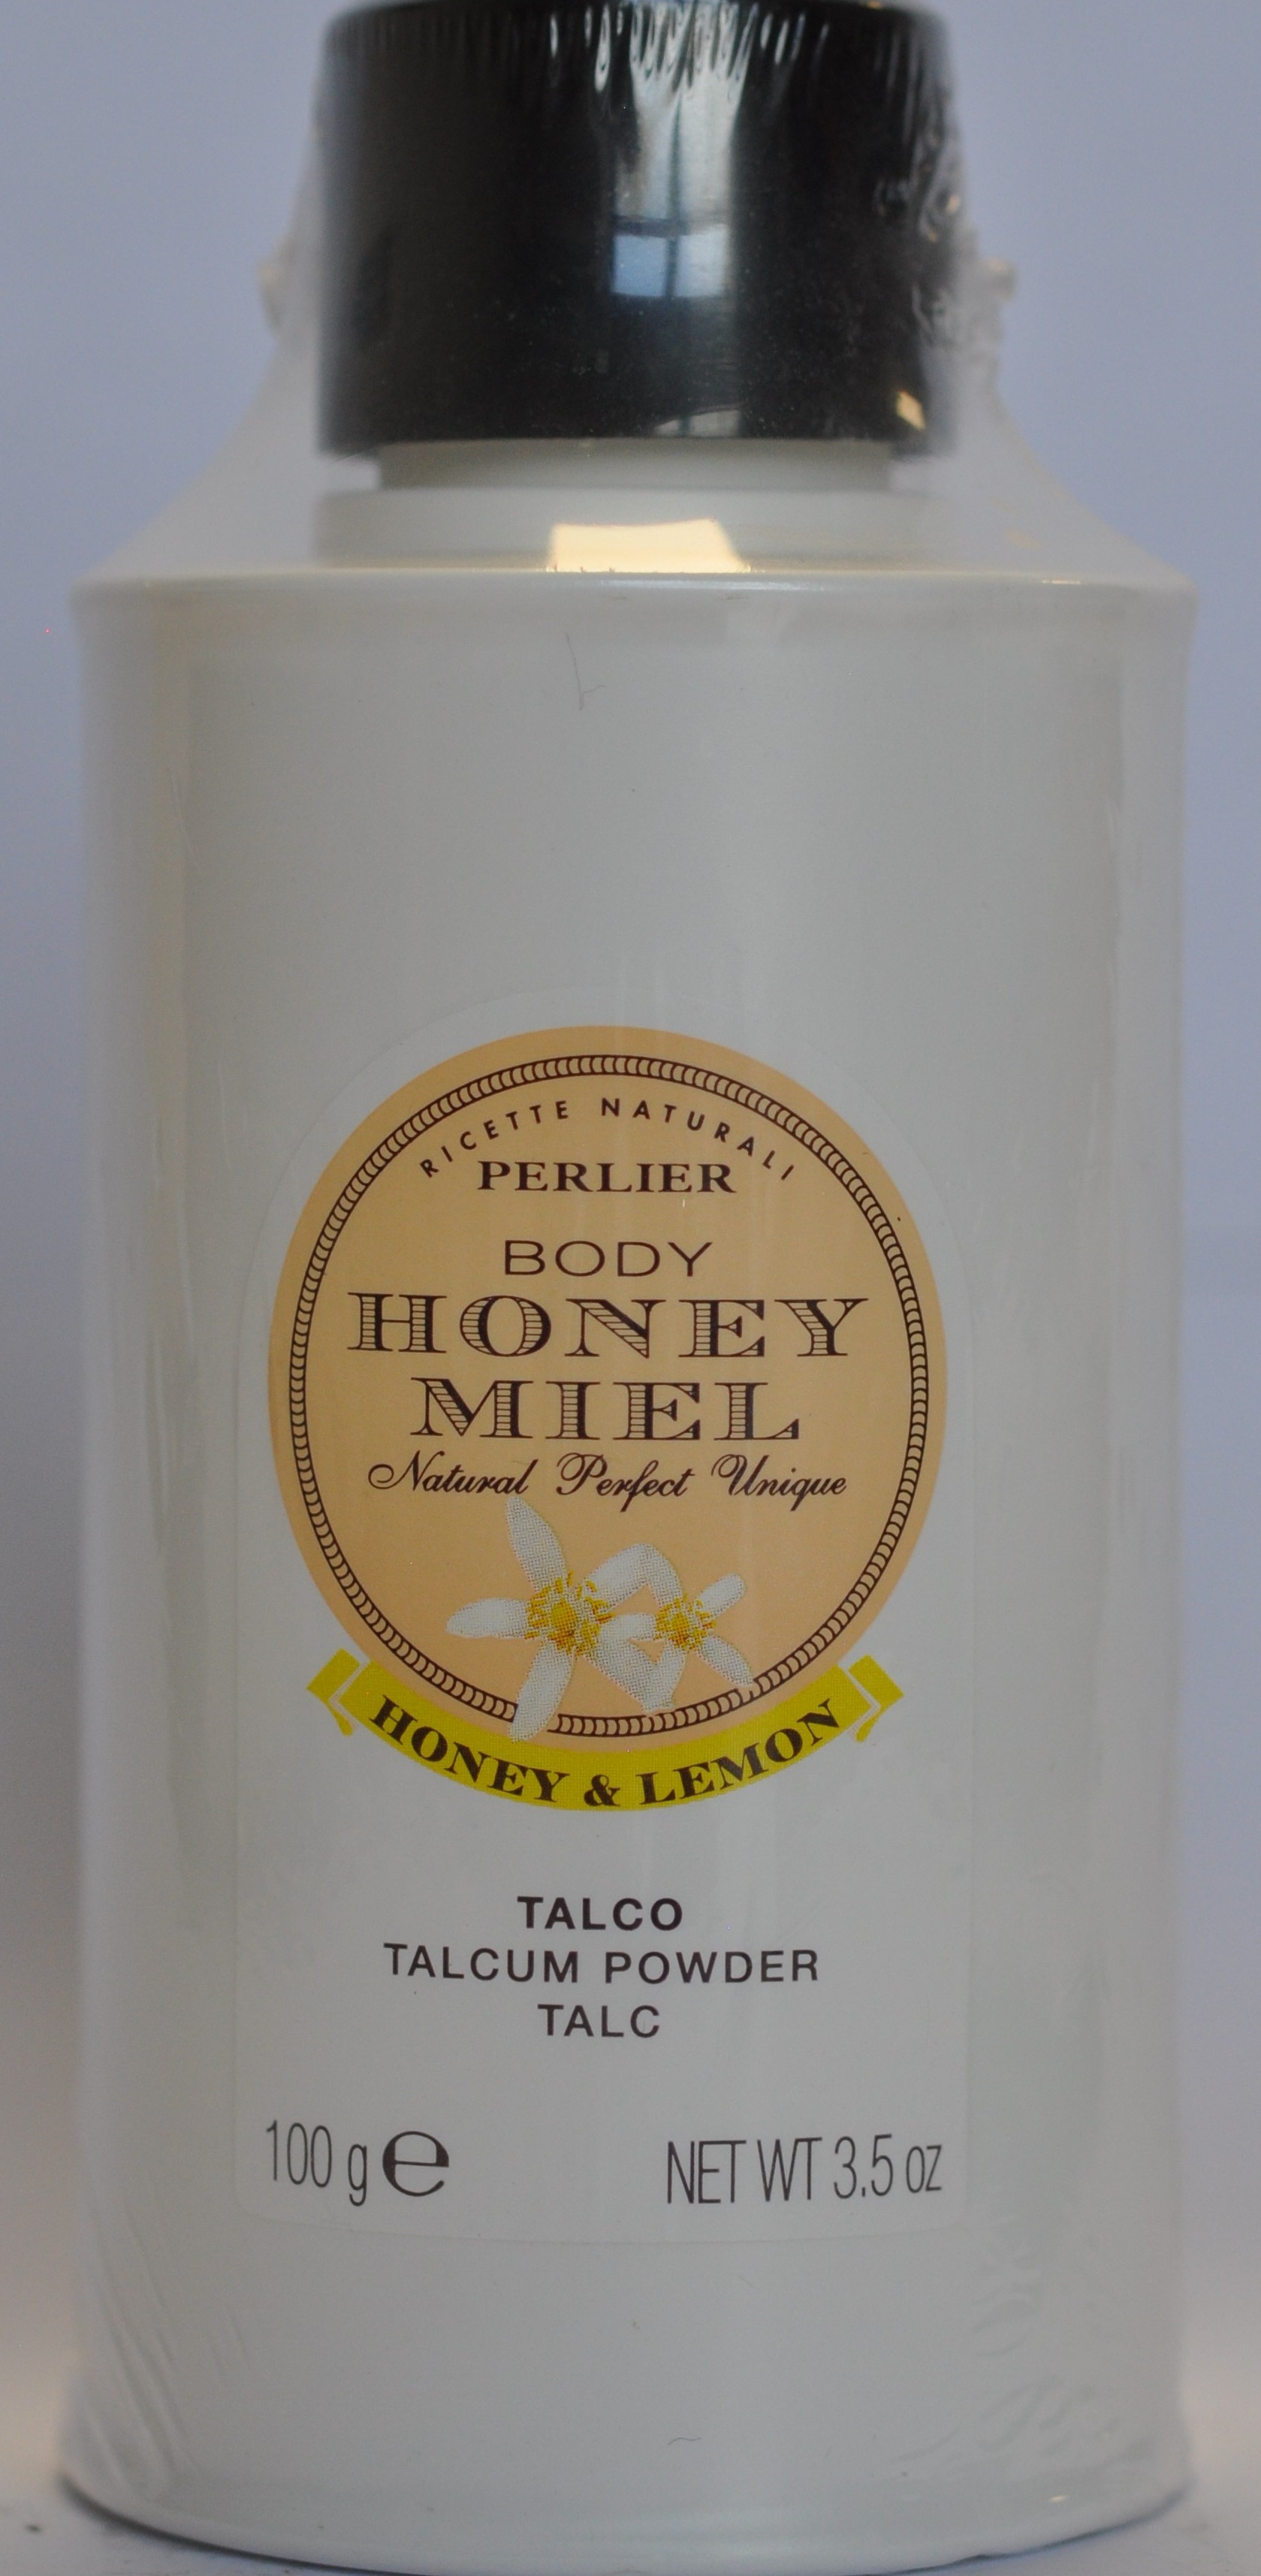 Body honey miel natural perfect unique – telový púder - foto výrobku